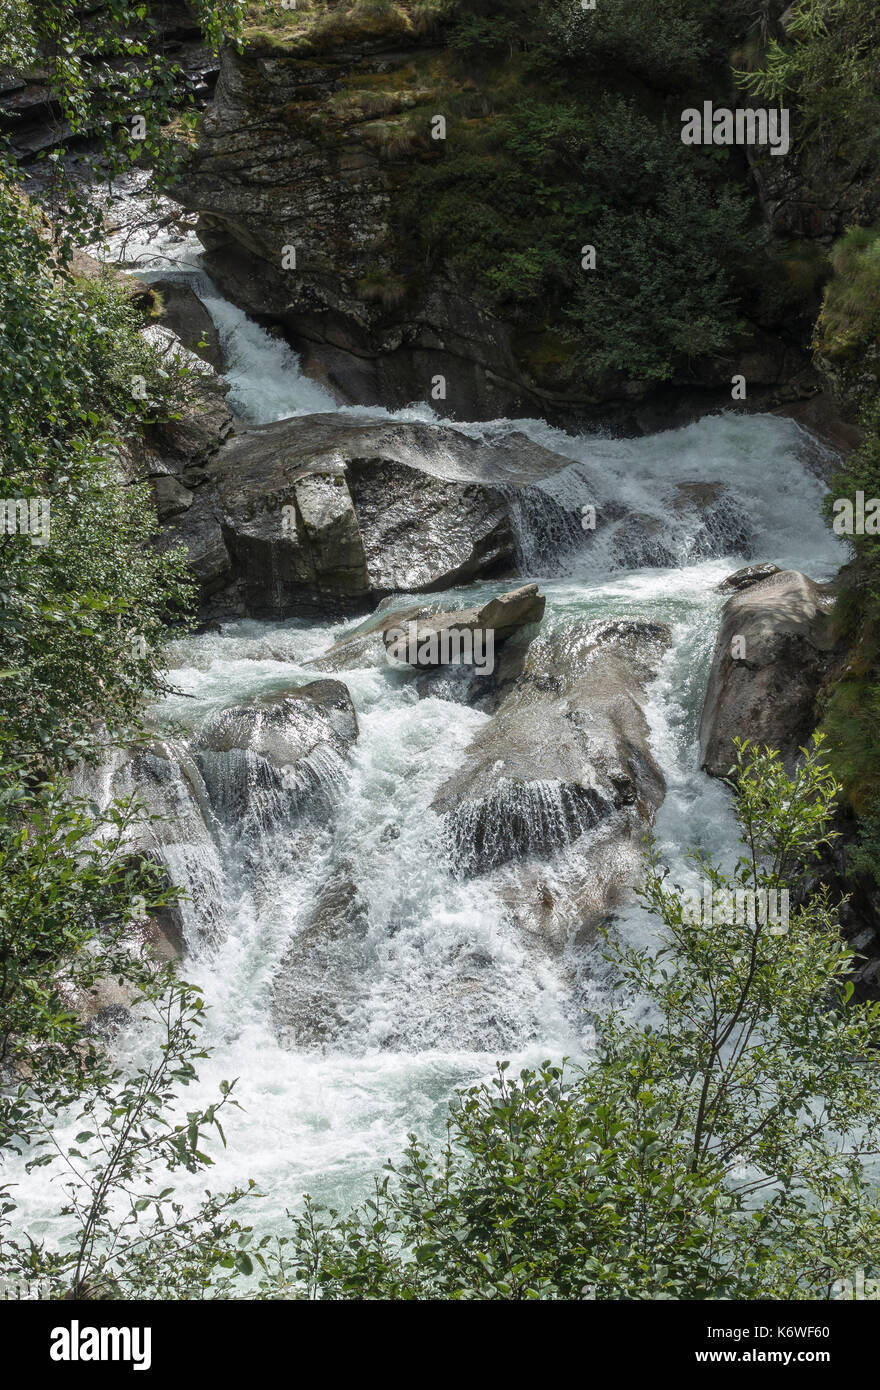 Les cascades de lillaz, lillaz cascate di urtier, ruisseau de montagne, sentier de randonnée circulaire, cogne, vallée latérale de la vallée d'aoste la Banque D'Images